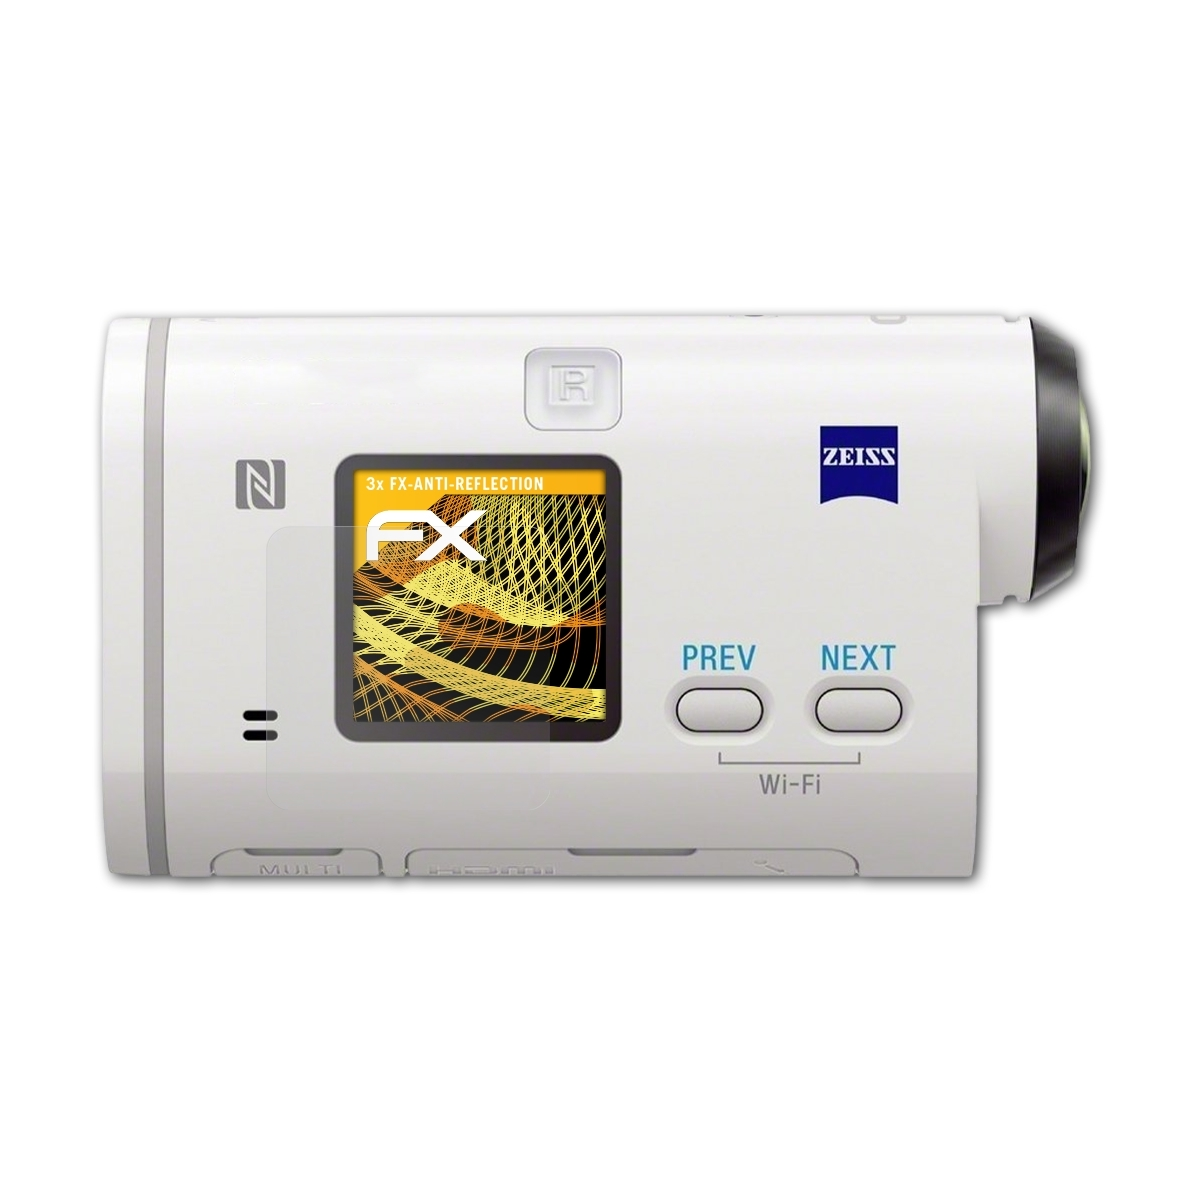 HDR-AS200) Displayschutz(für Sony 3x ATFOLIX FX-Antireflex